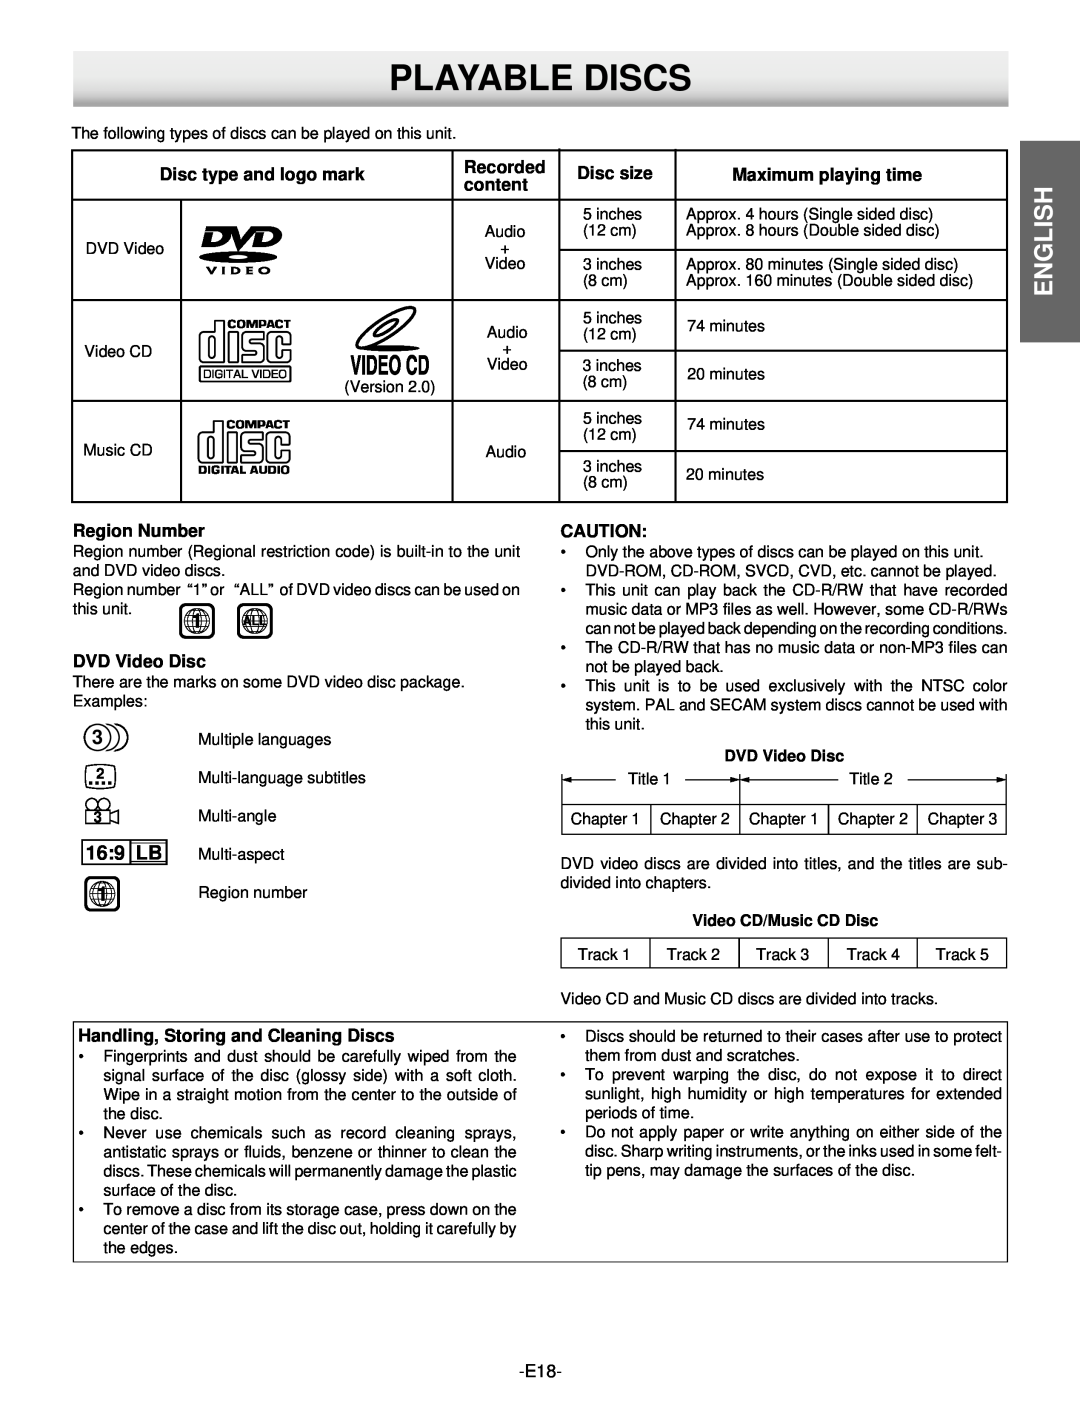 Hitachi DV-S522U instruction manual Playable Discs, 16 9 LB, English, DVD Video Disc, Video CD/Music CD Disc 